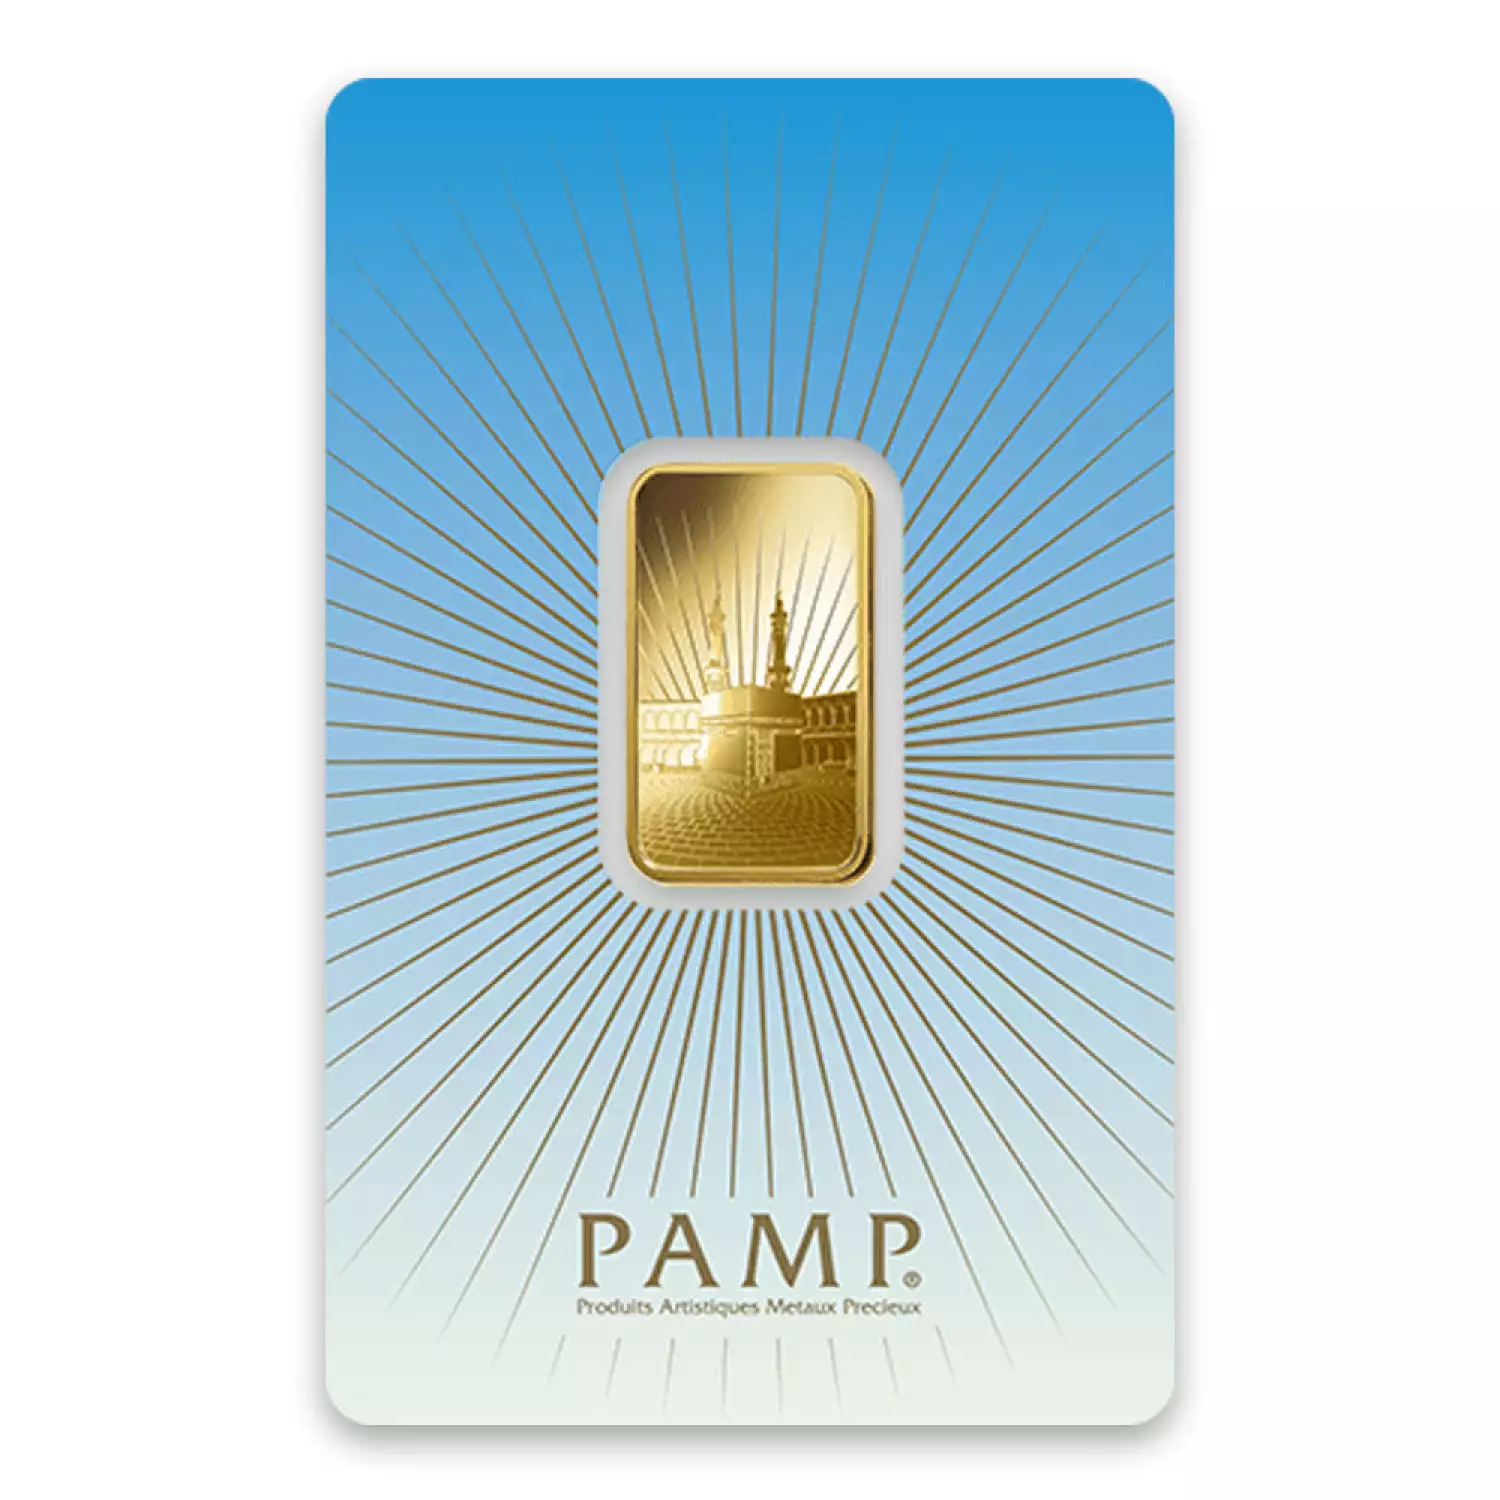 10g PAMP Gold Bar - Ka `Bah. Mecca (3)